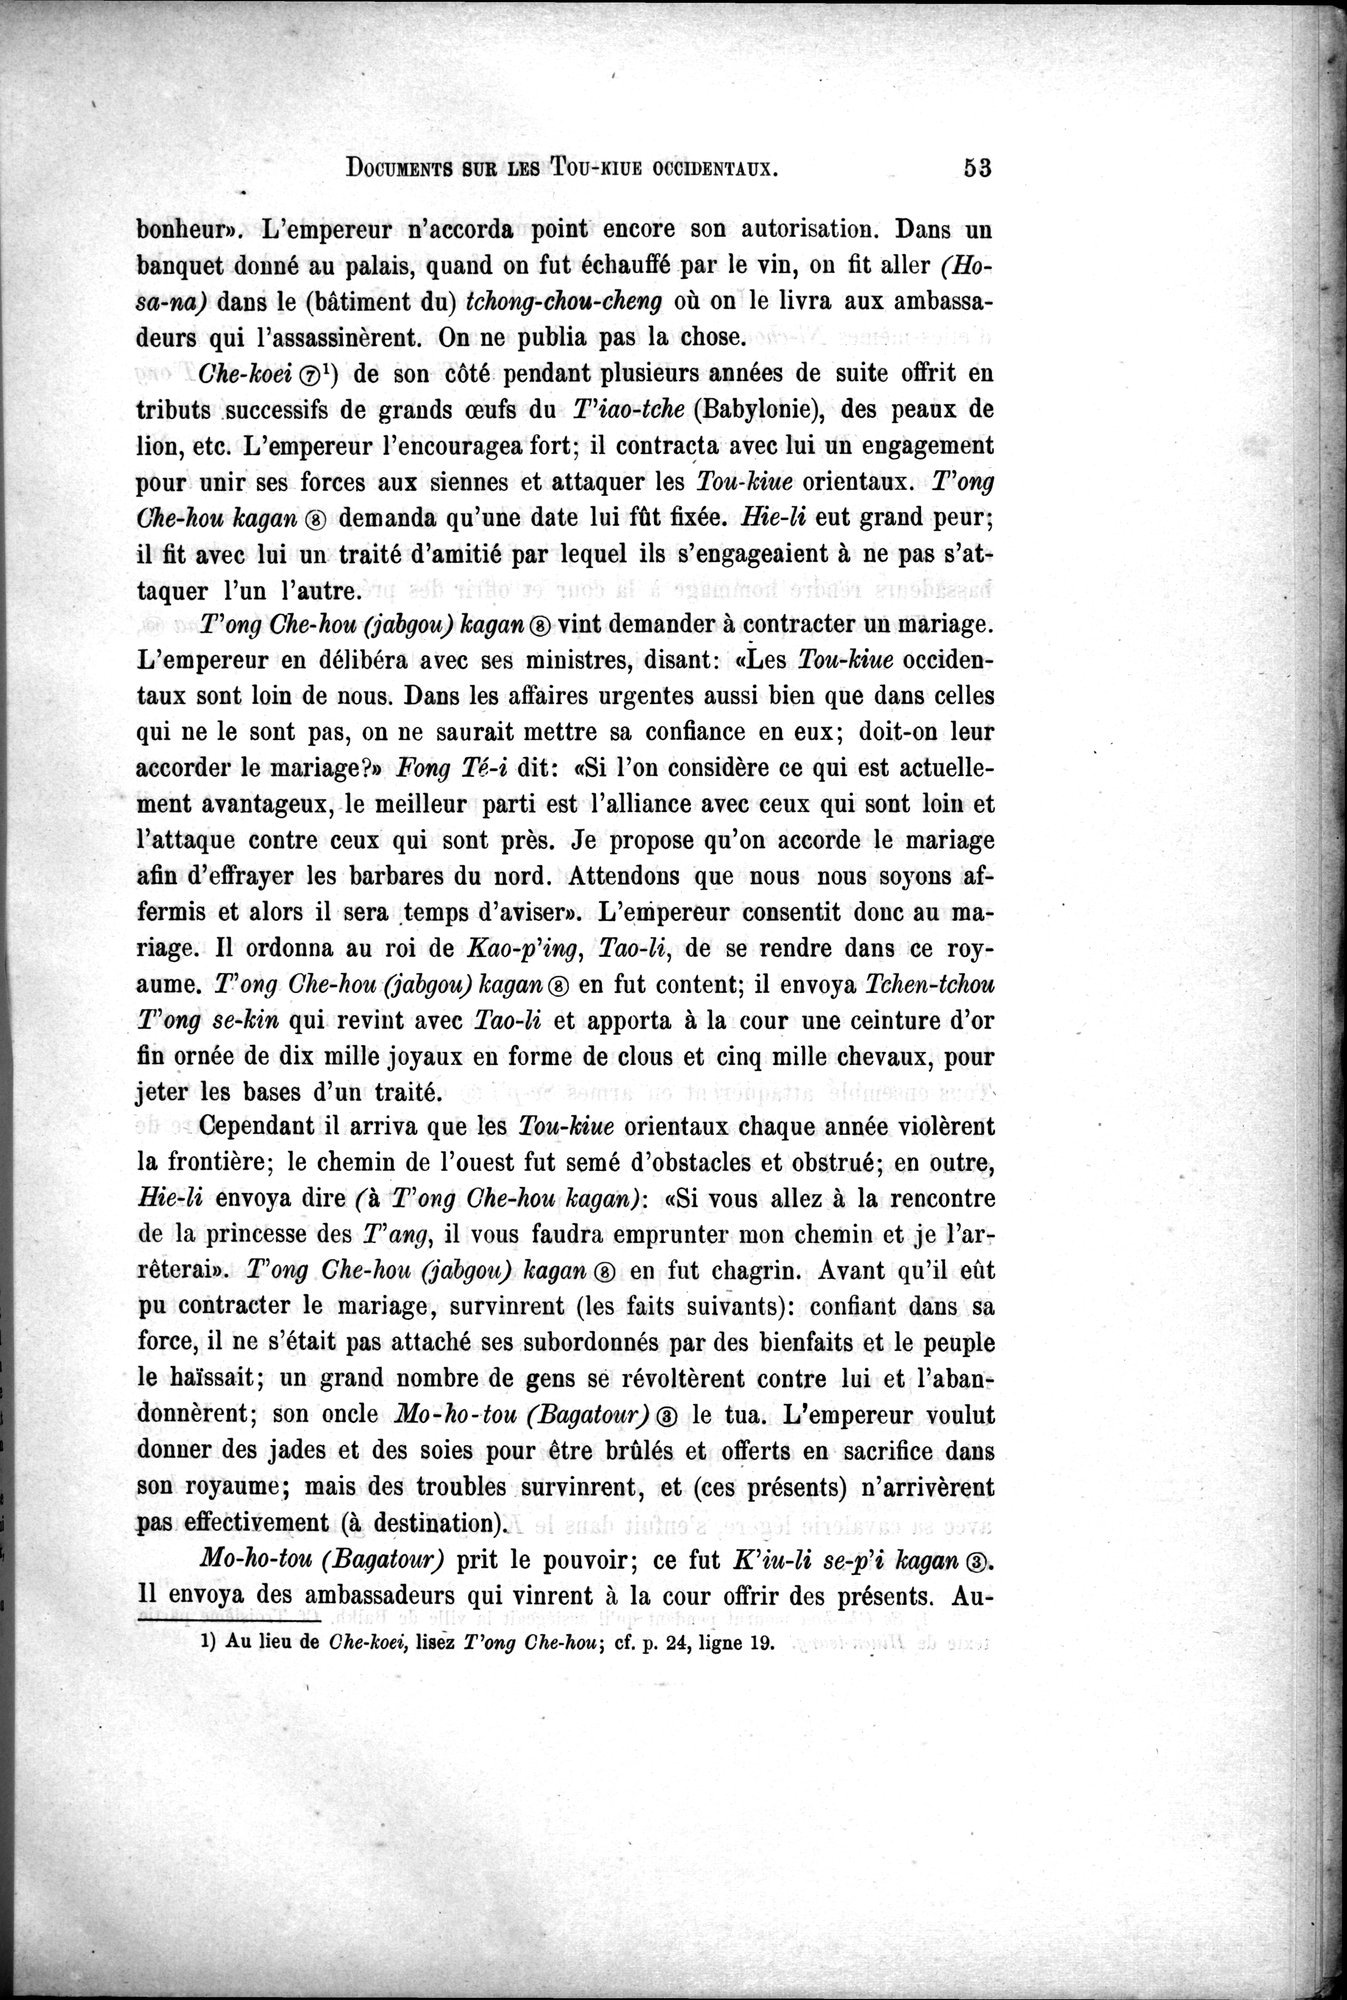 Documents sur les Tou-kiue (Turcs) occidentaux : vol.1 / Page 63 (Grayscale High Resolution Image)